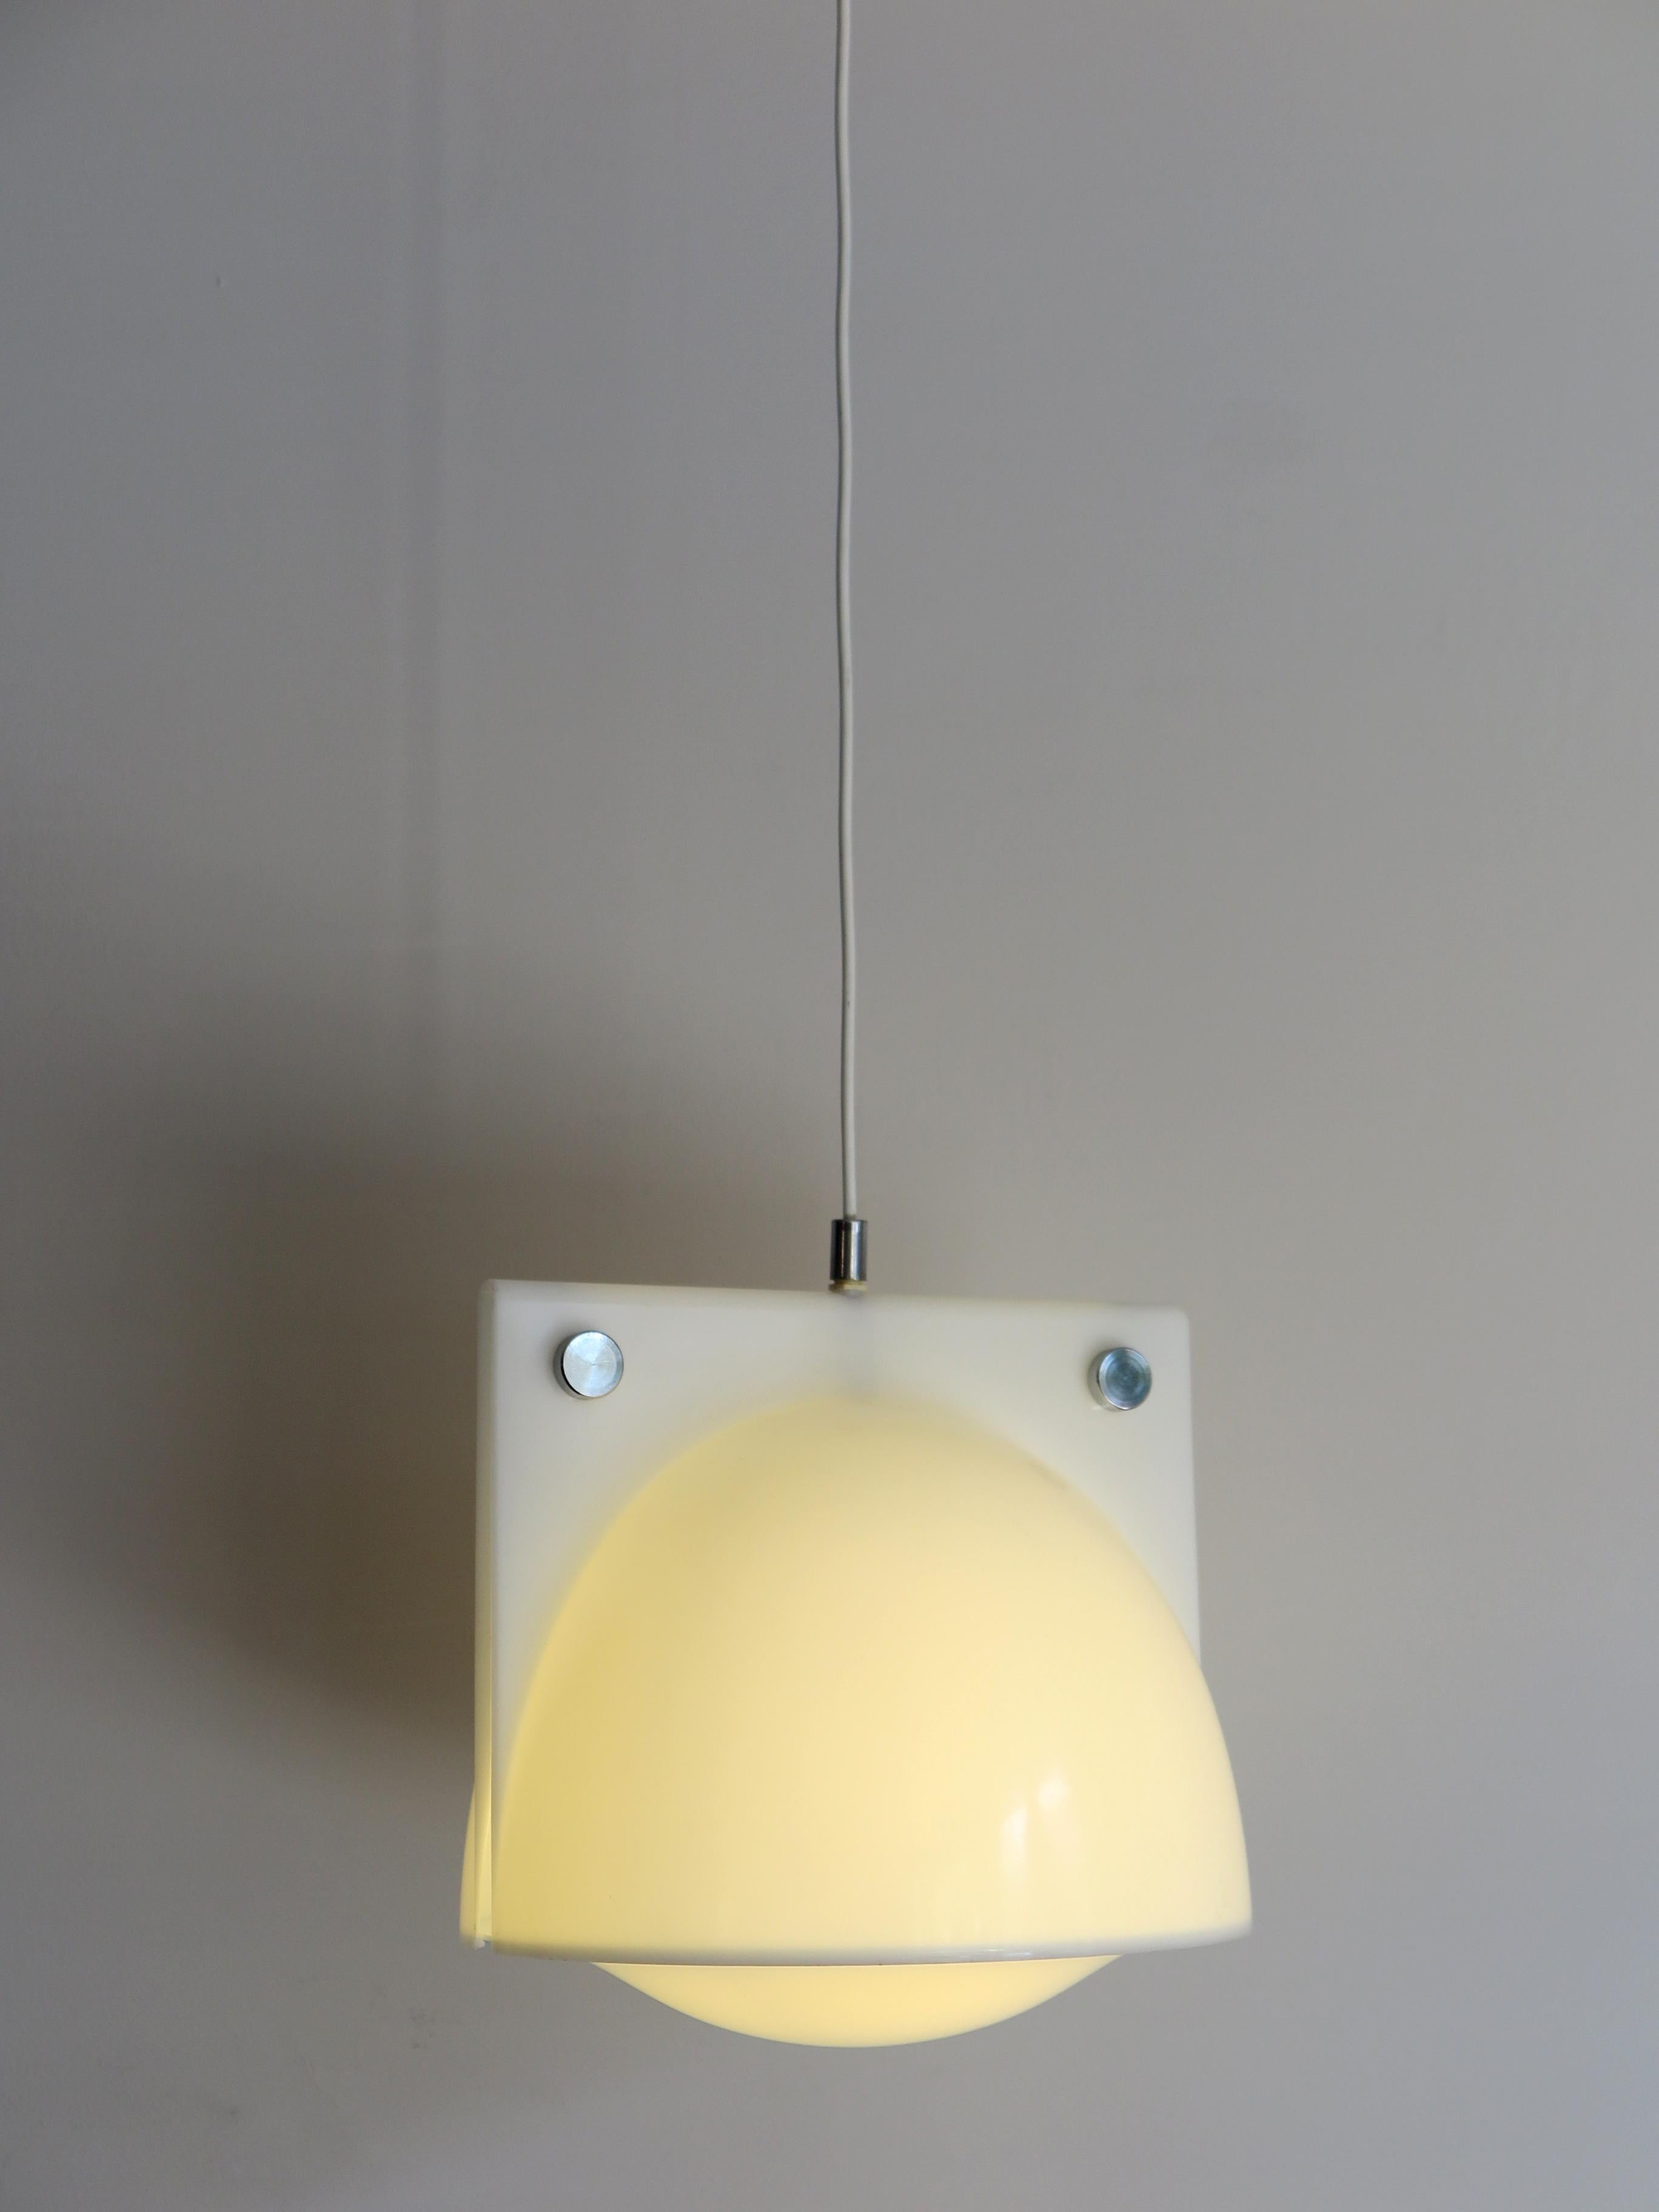 Lampe suspendue italienne en méthacrylate modèle Orione conçue par Ermanno Lampa & Sergio Brazzoli pour Guzzini Harvey, années 1970.
Veuillez noter que la lampe est d'origine de l'époque et qu'elle présente des signes normaux d'âge et d'utilisation.